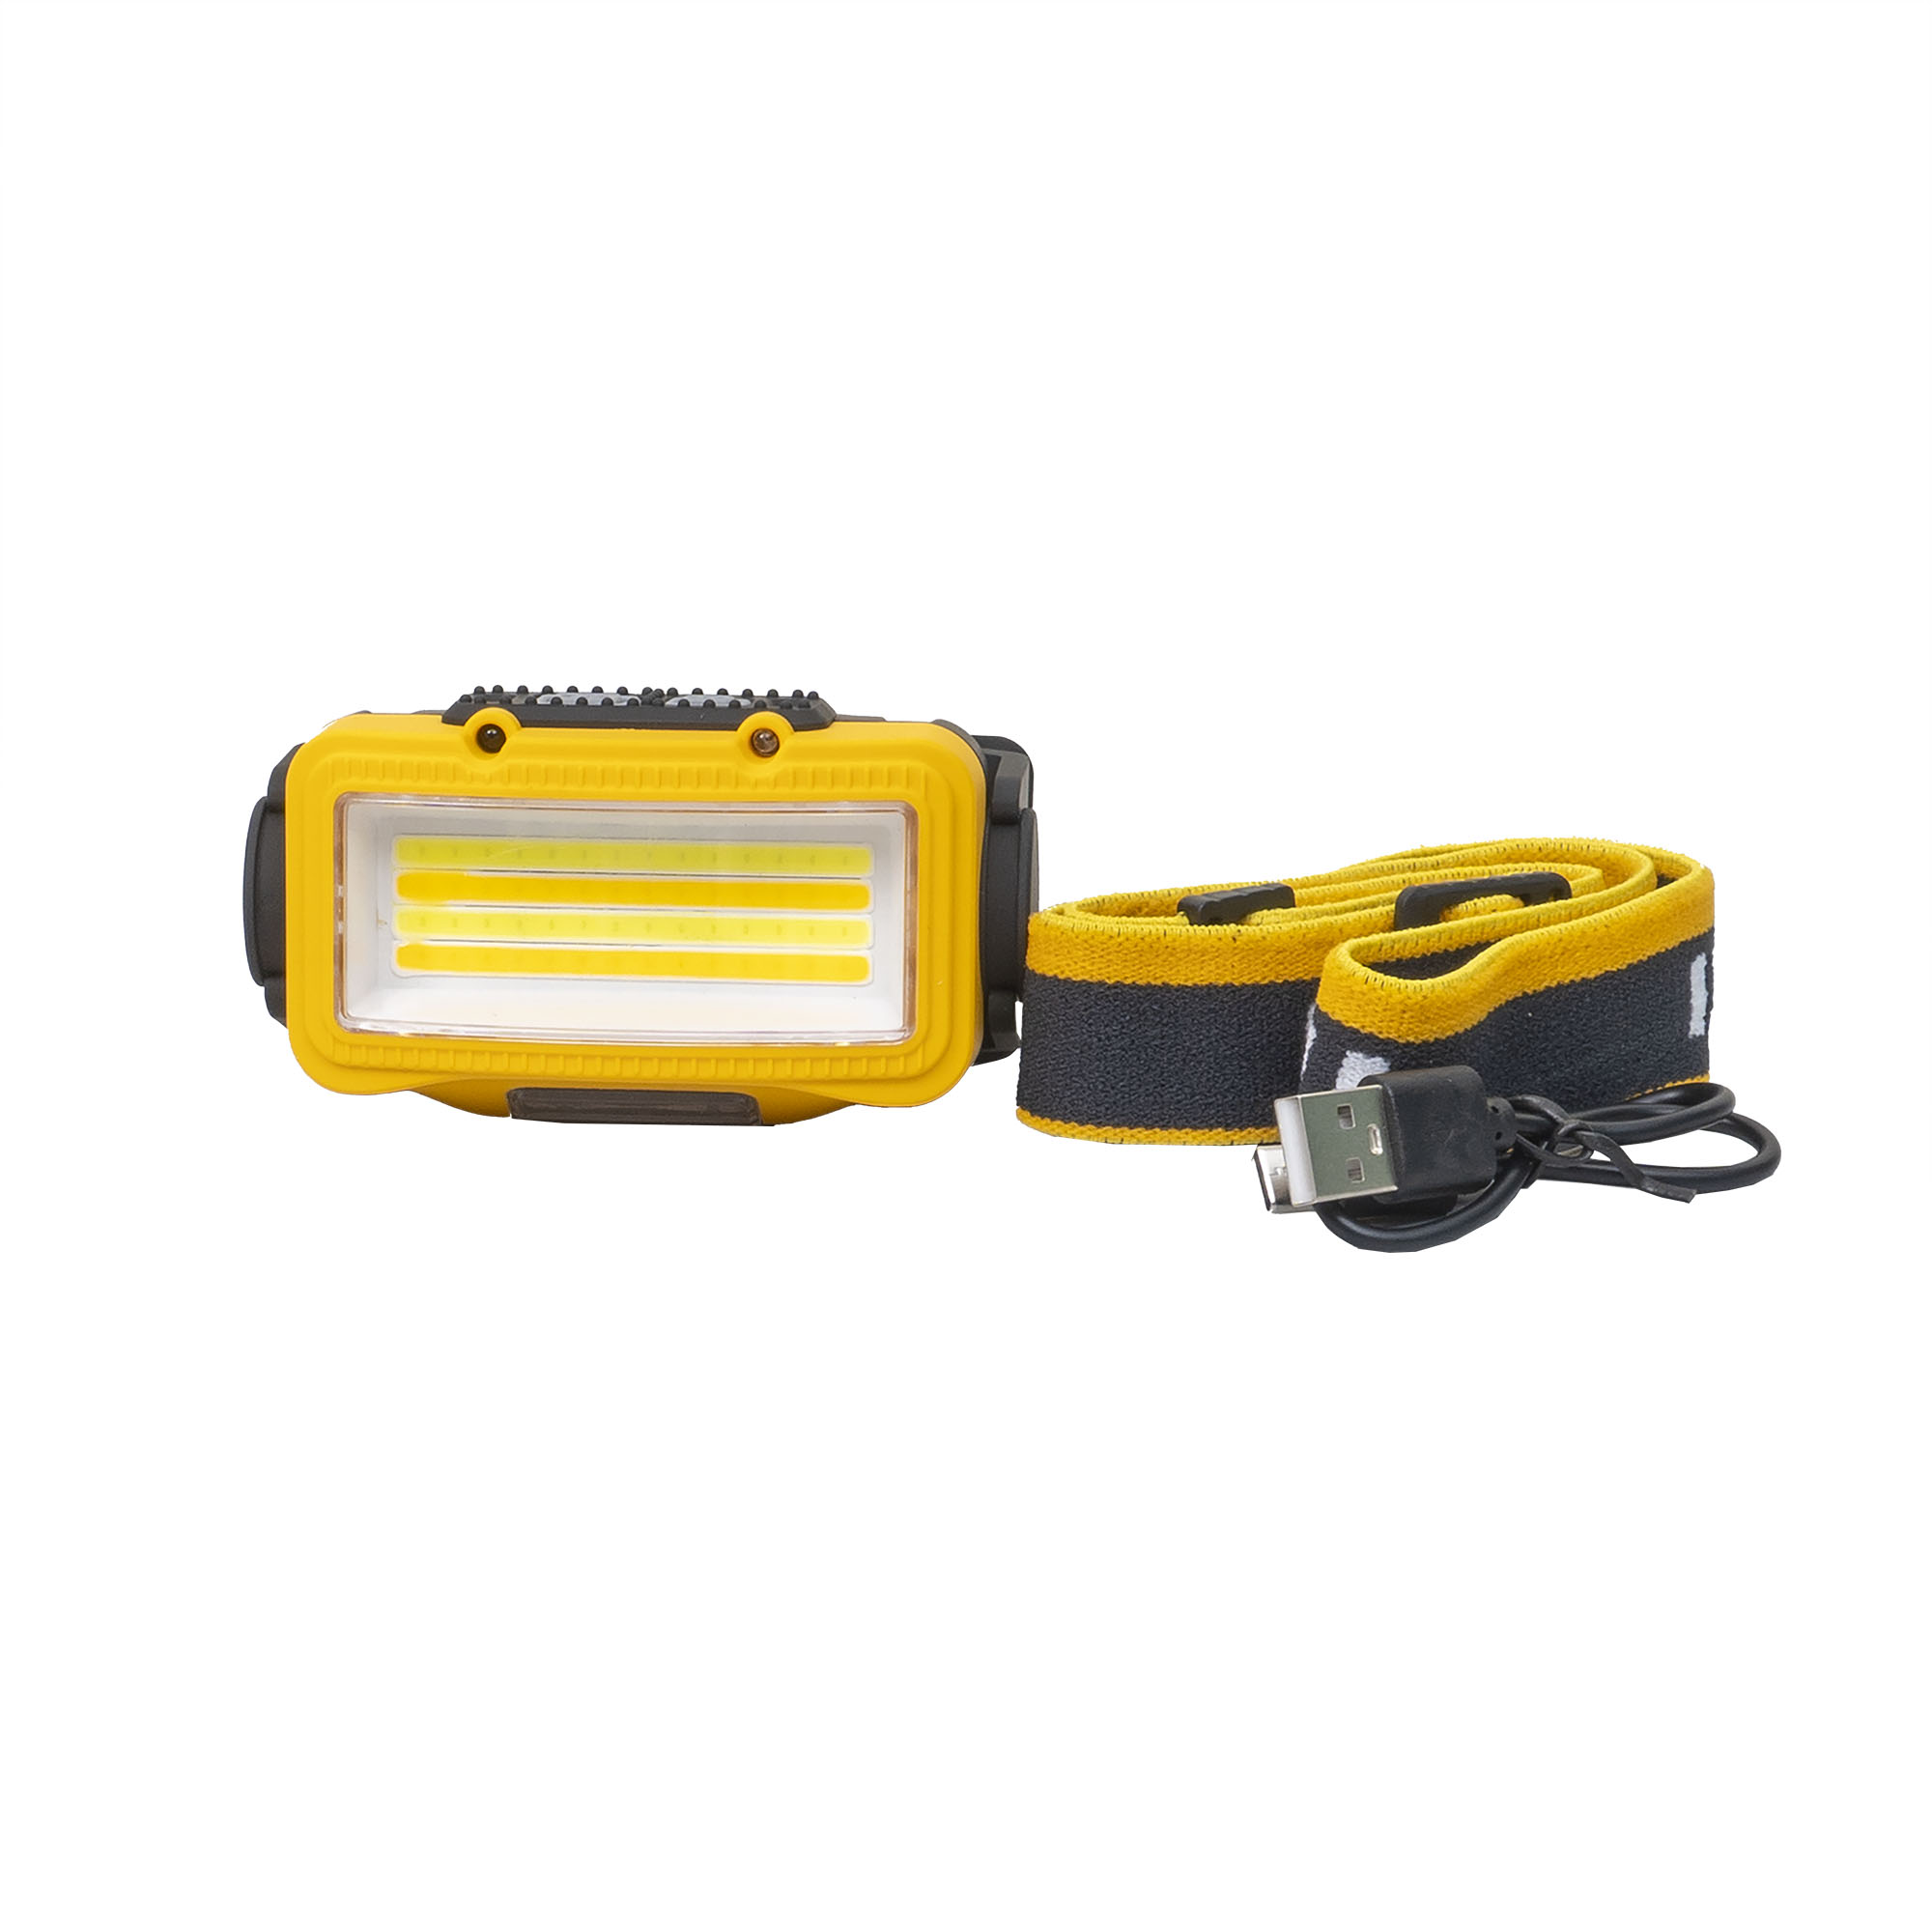 Lanterna de cap, 8 moduri de iluminat, USB, Z-tools W6103A, galben / ZTS 8206